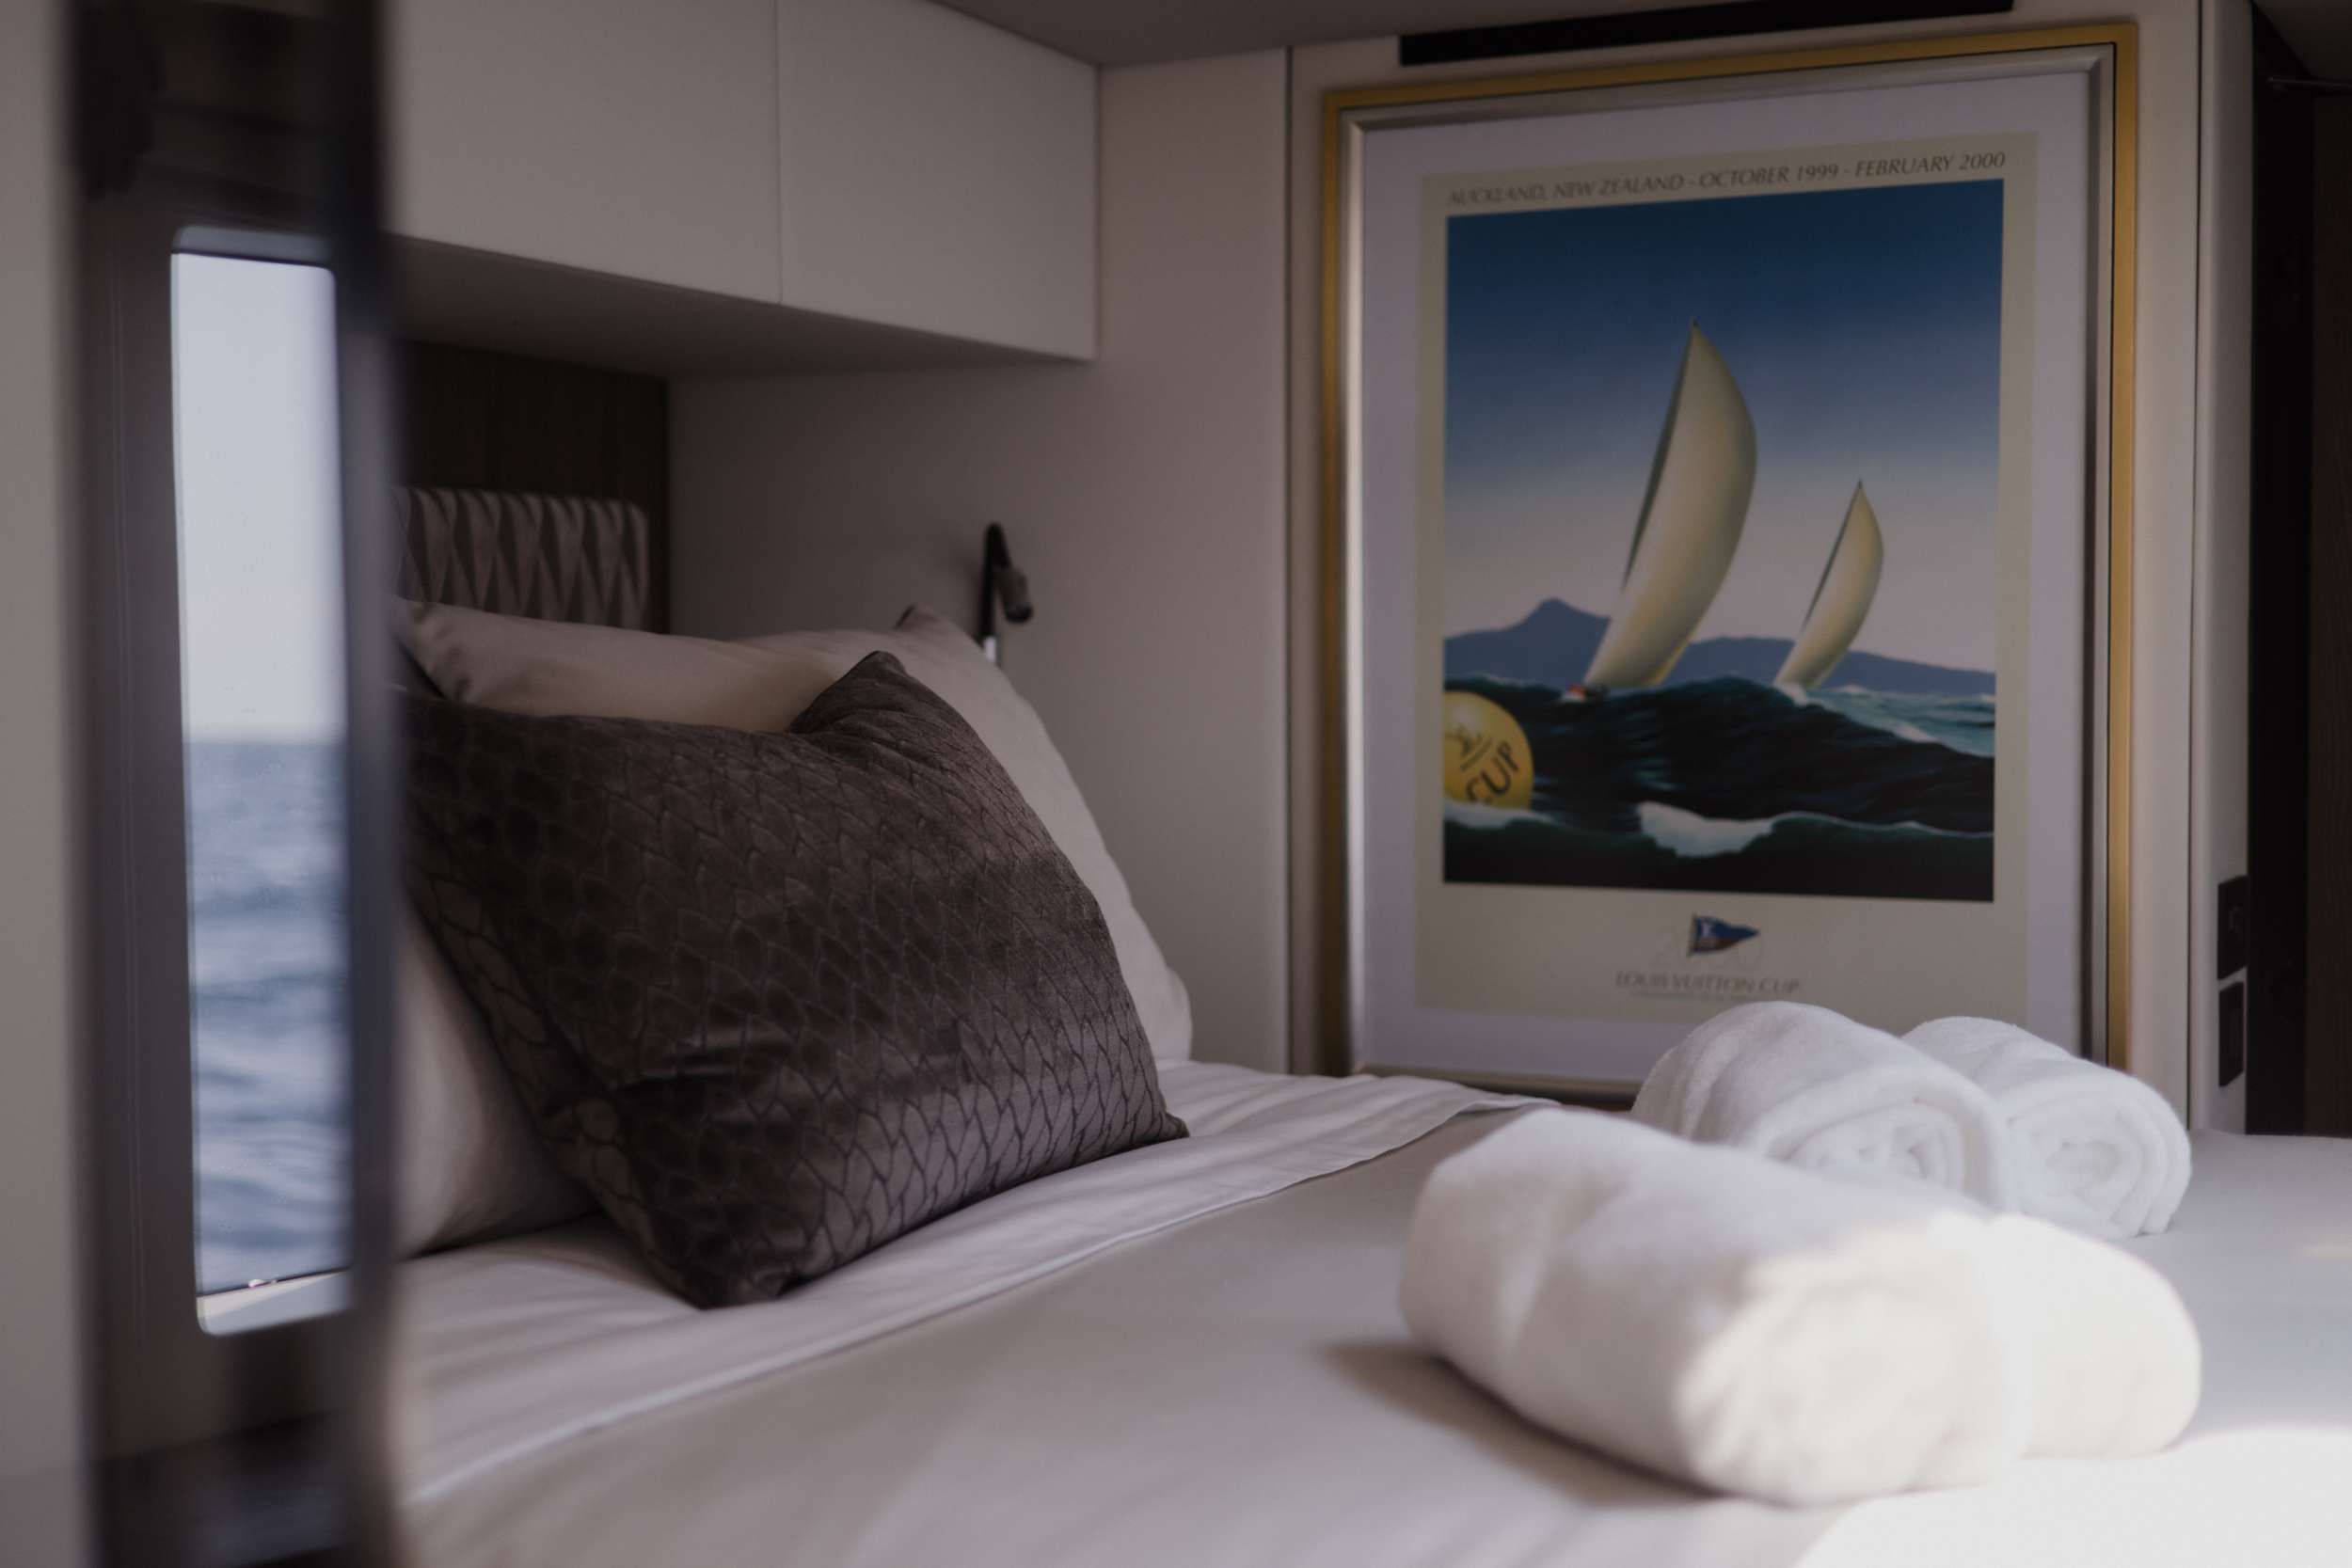 SWEET DREAMS Yacht Charter - Sunreef 50 SWEET DREAMS